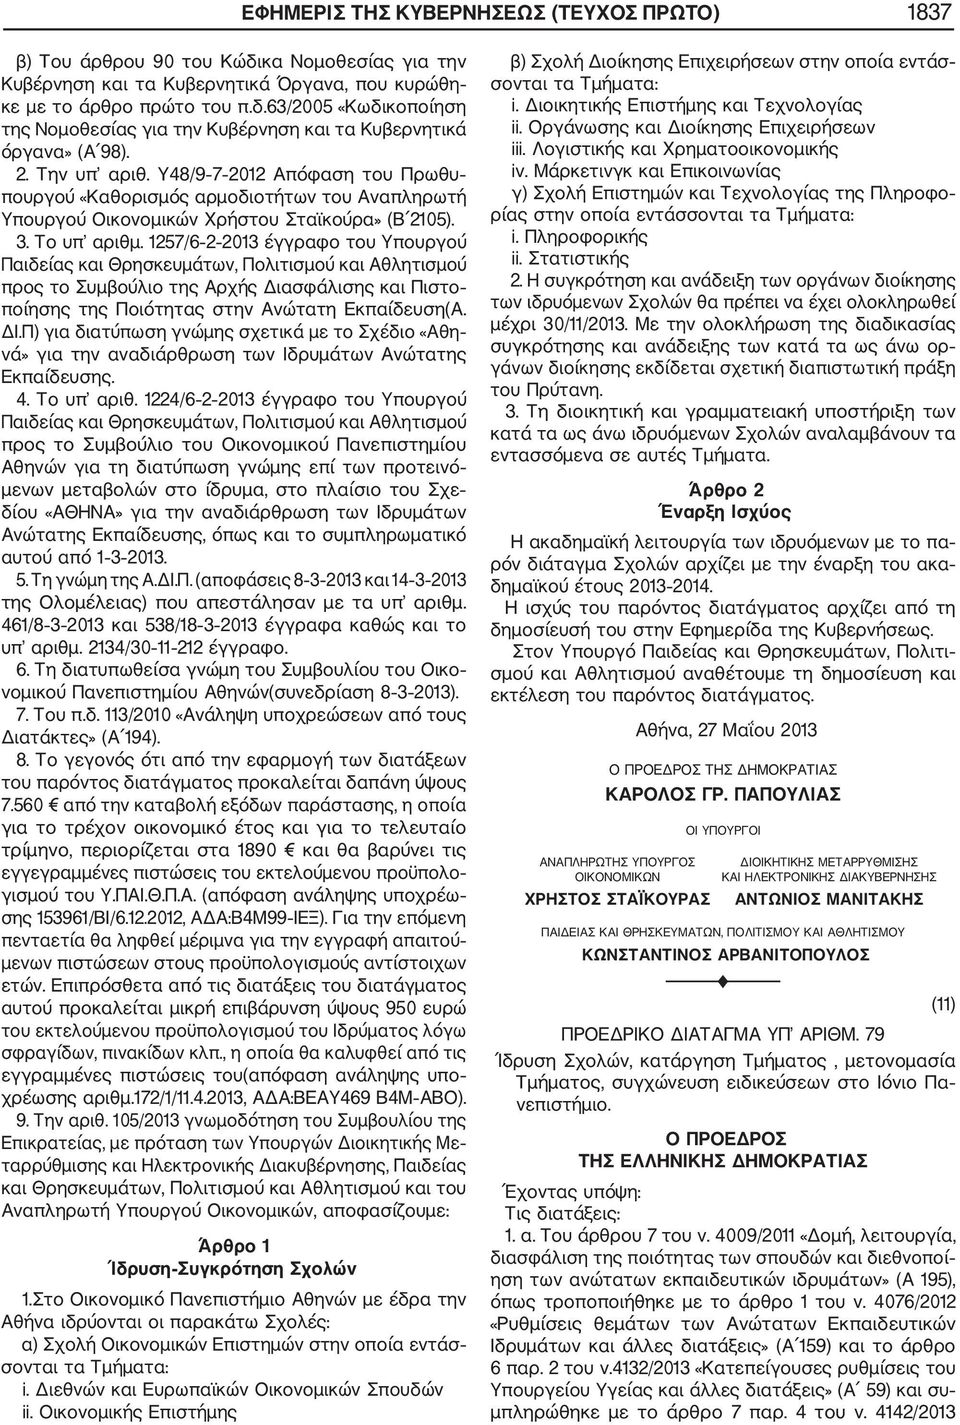 1257/6 2 2013 έγγραφο του Υπουργού προς το Συμβούλιο της Αρχής Διασφάλισης και Πιστο ποίησης της Ποιότητας στην Ανώτατη Εκπαίδευση(Α. ΔΙ.